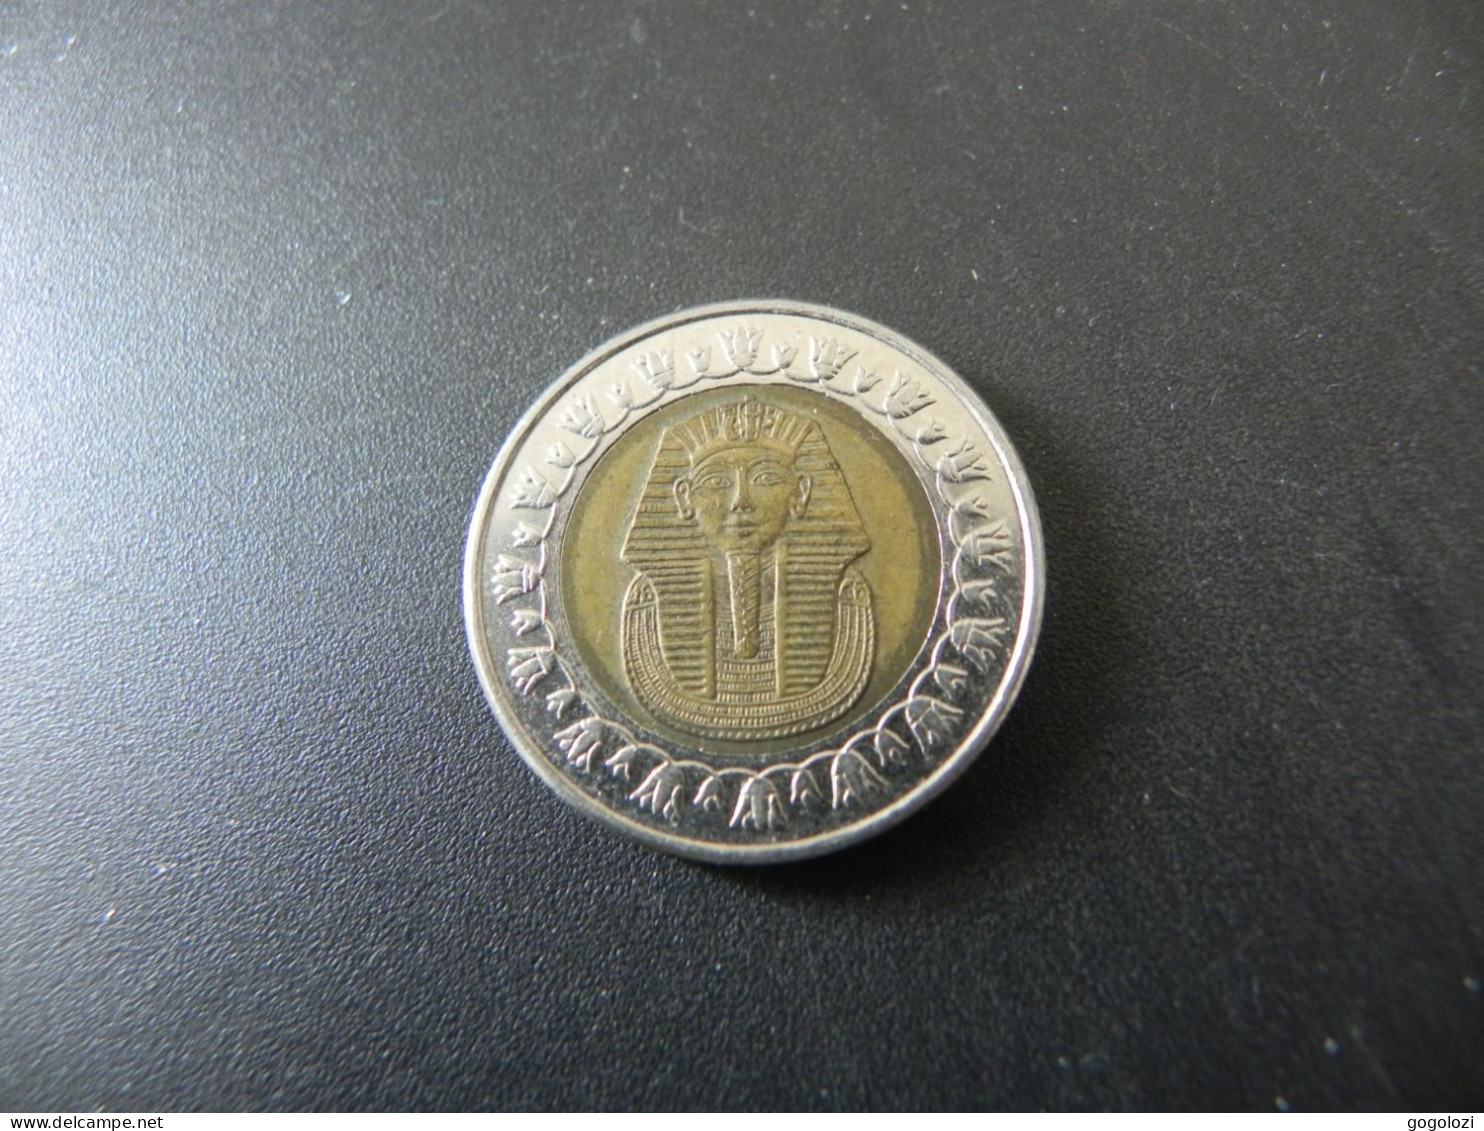 Egypte 1 Pound 2010 - Egypt